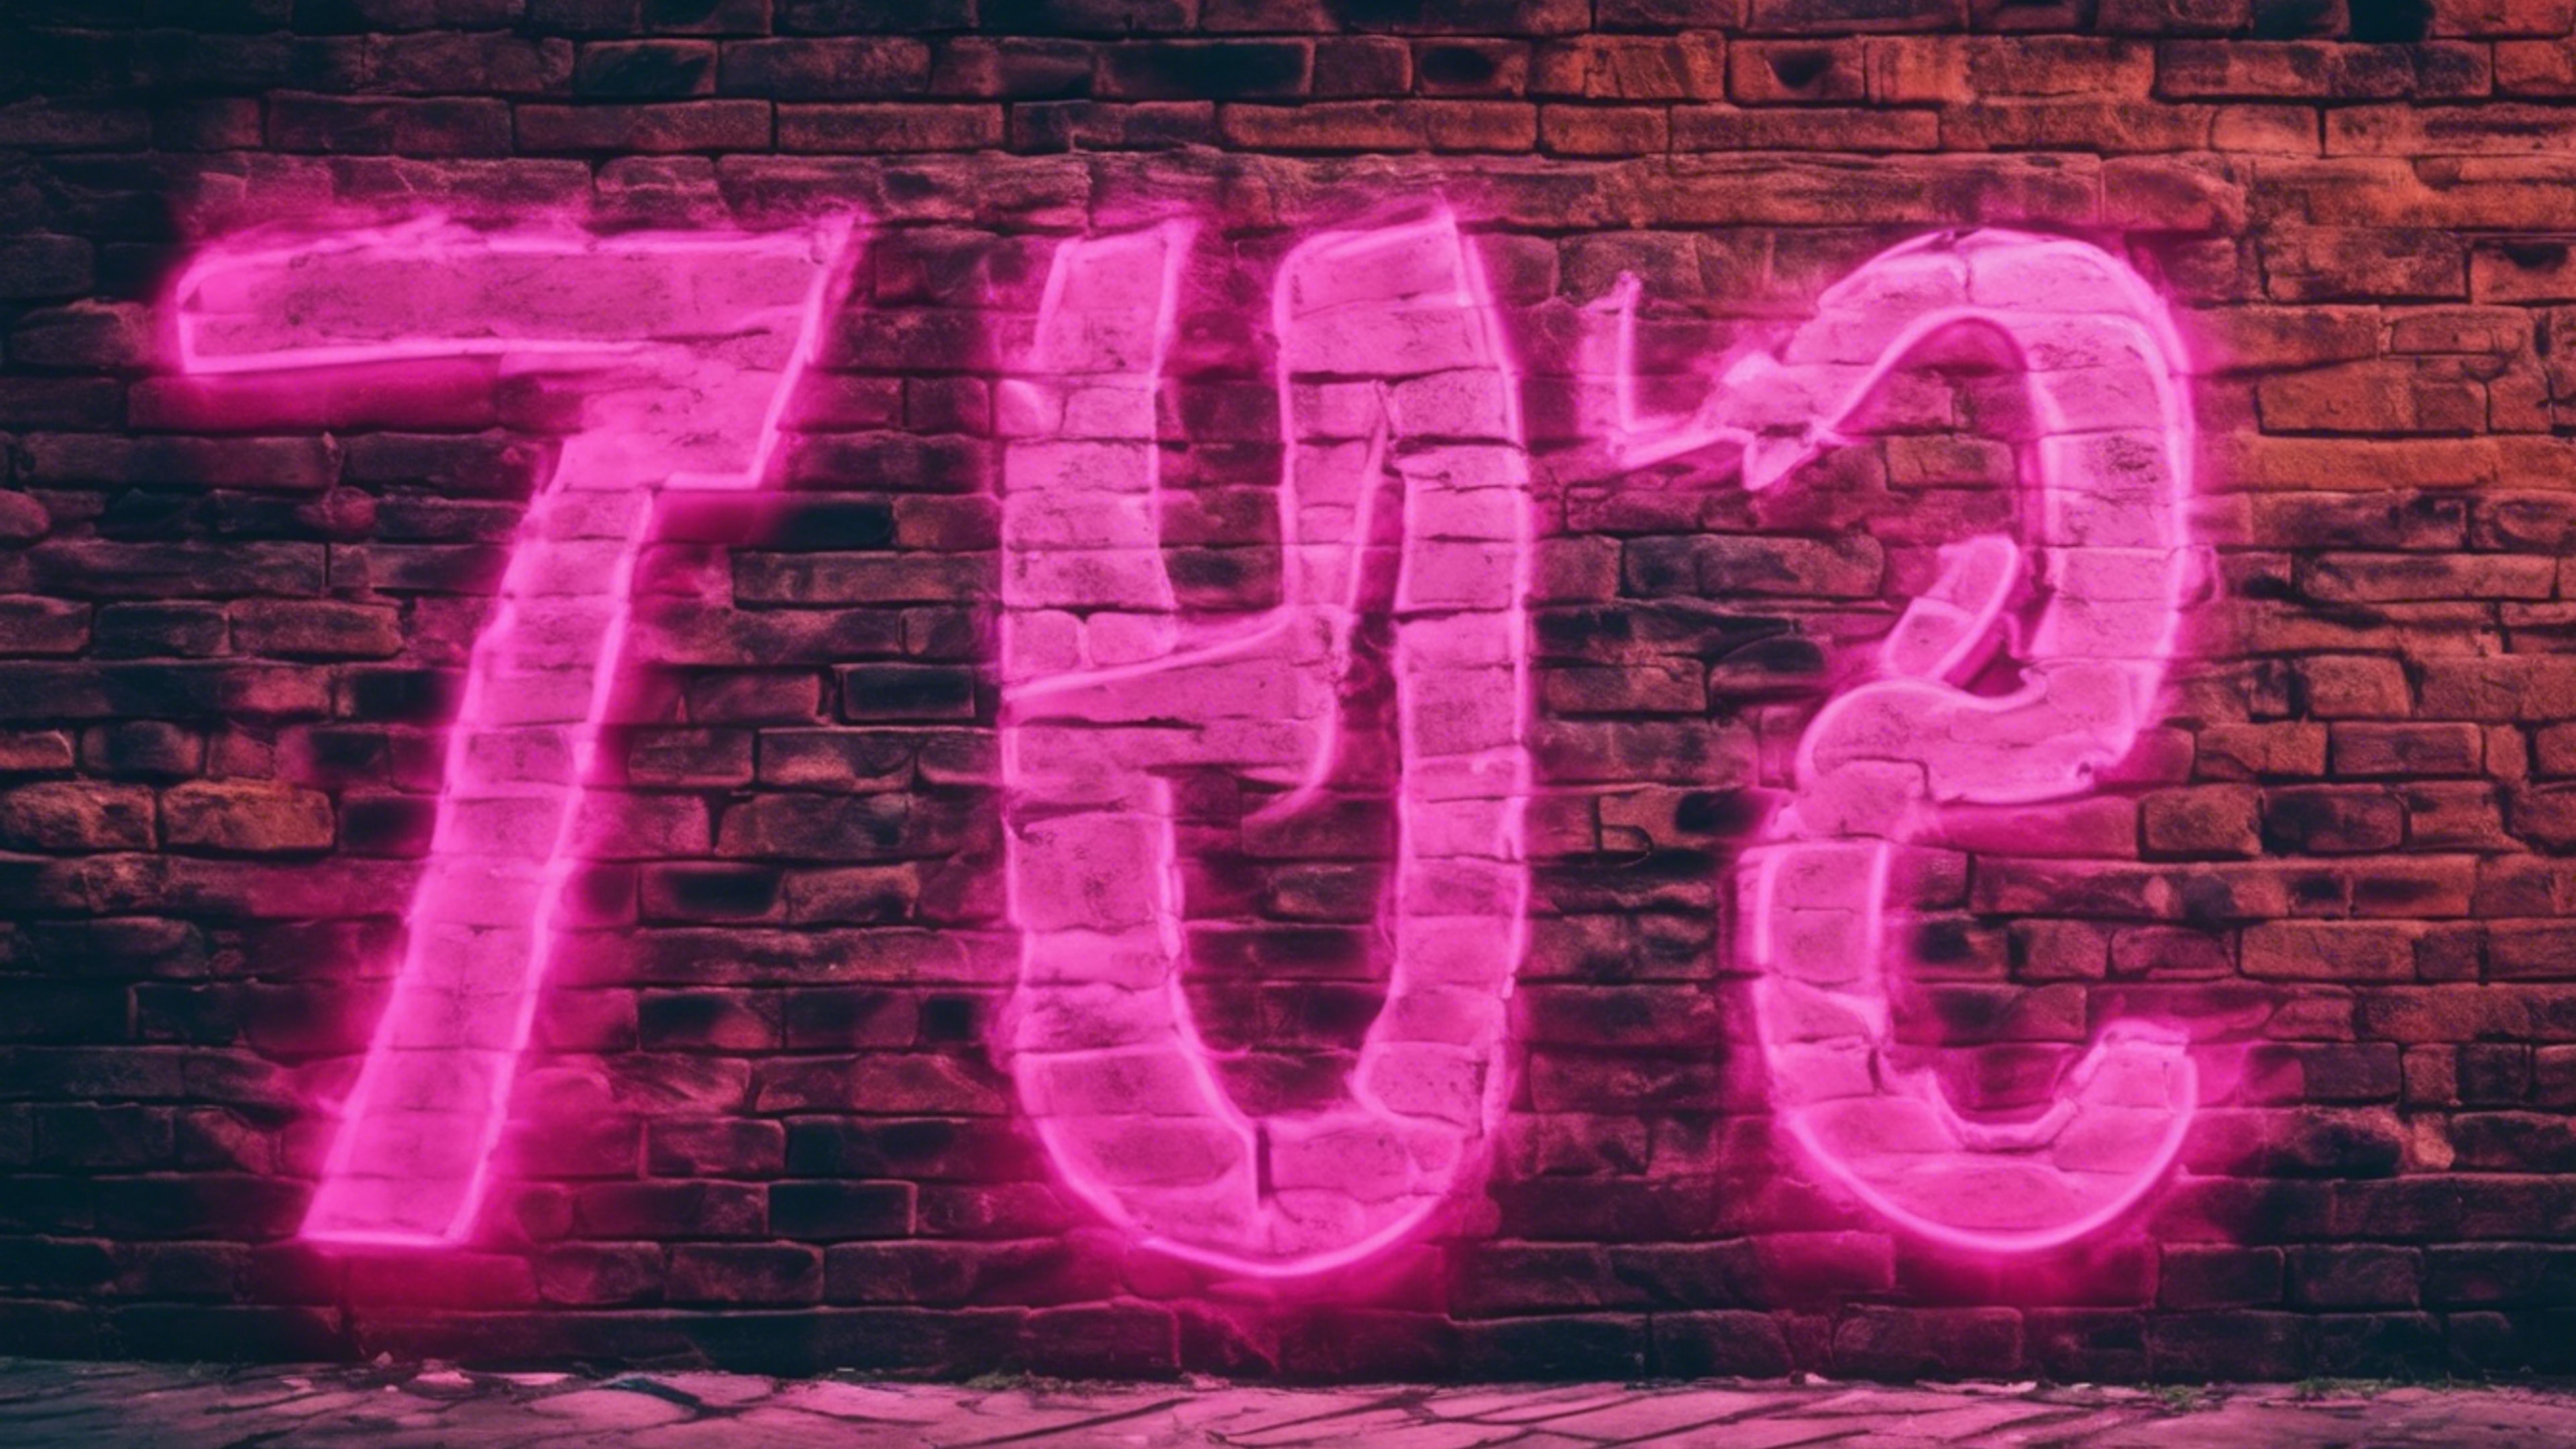 A bright neon pink graffiti on an old brick wall in an urban setting. duvar kağıdı[f64c7f440a704c87afc0]